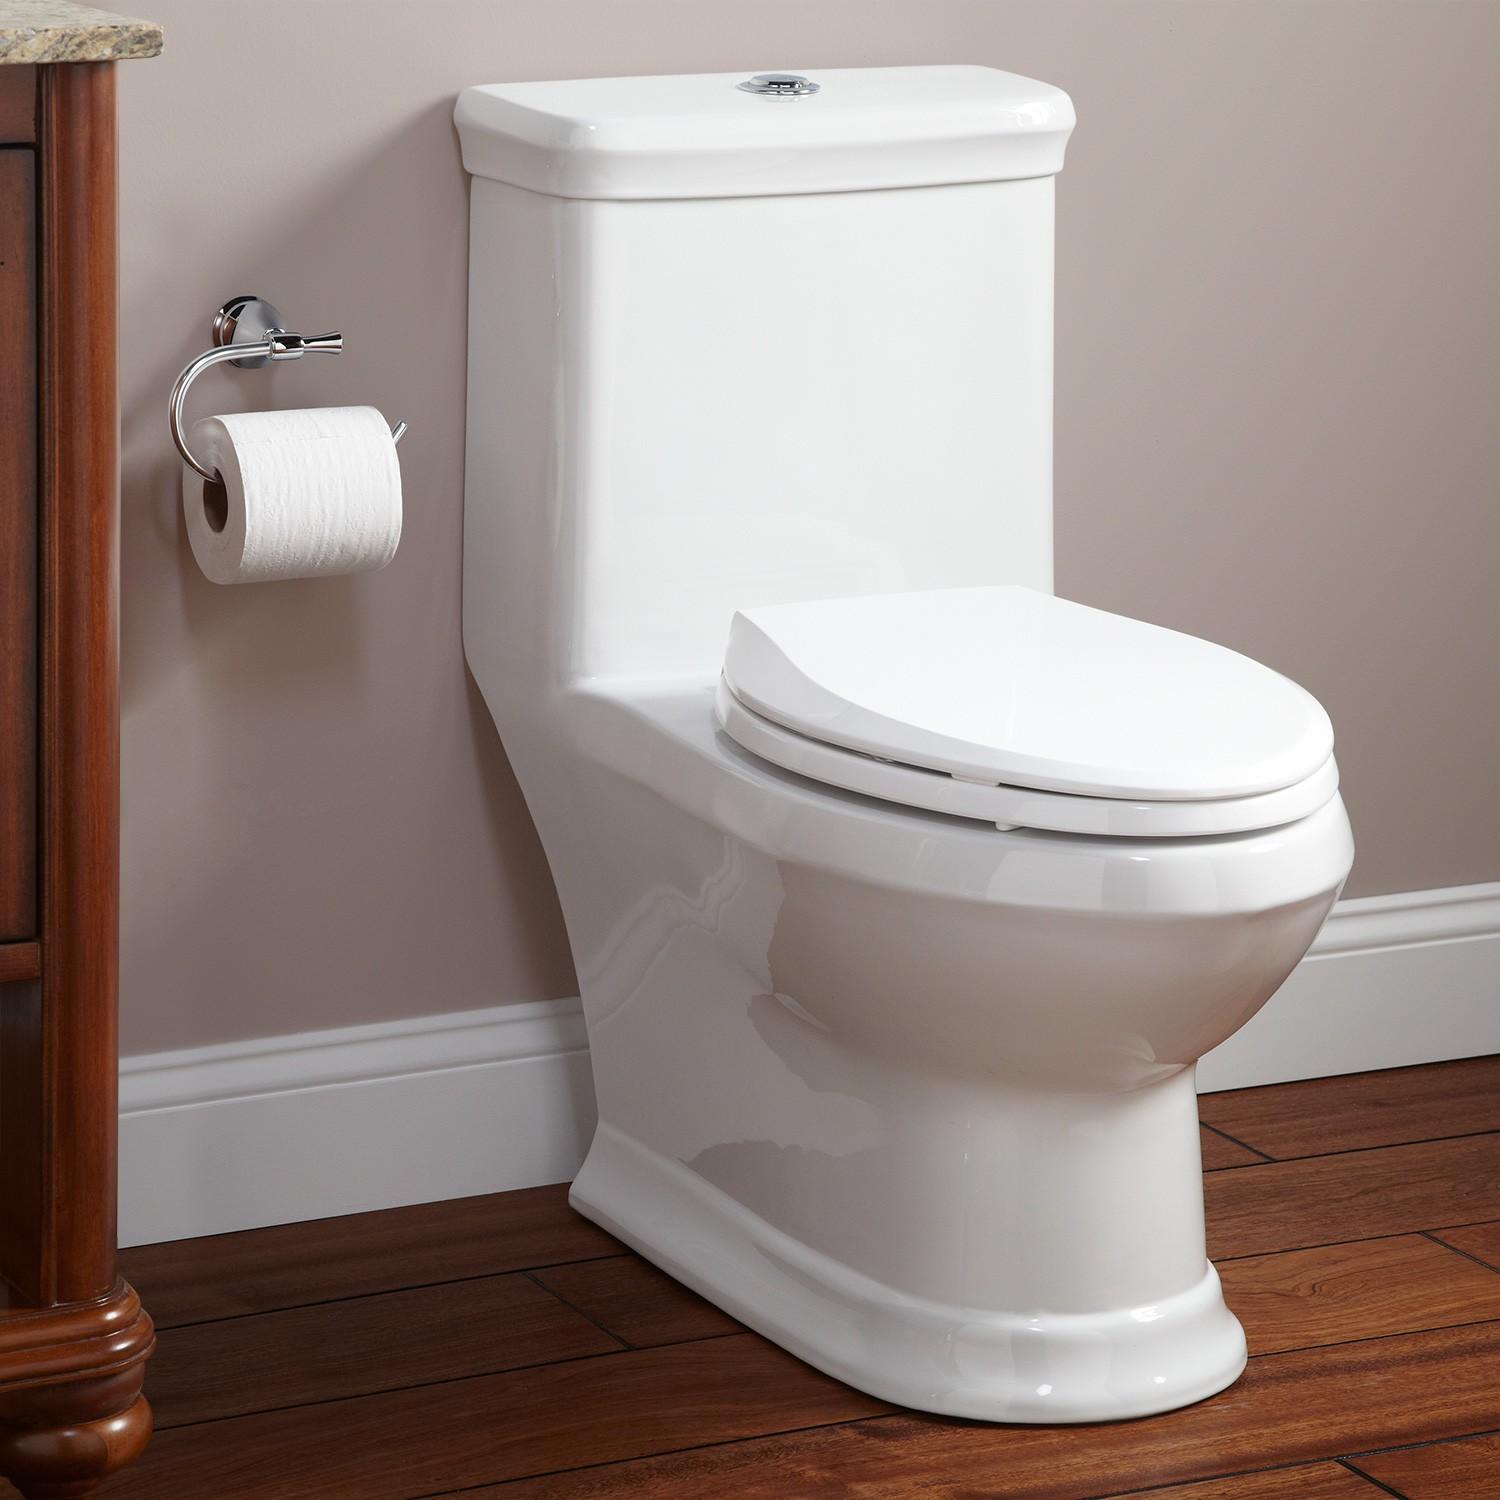 362641-l-dual-flush-one-piece-toilet